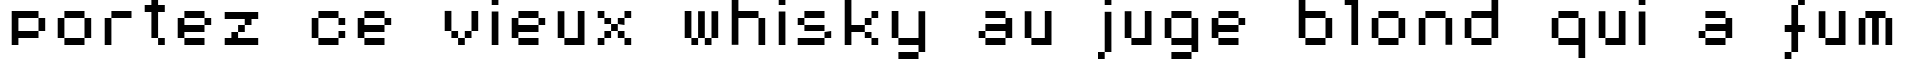 Пример написания шрифтом AuX DotBitC текста на французском